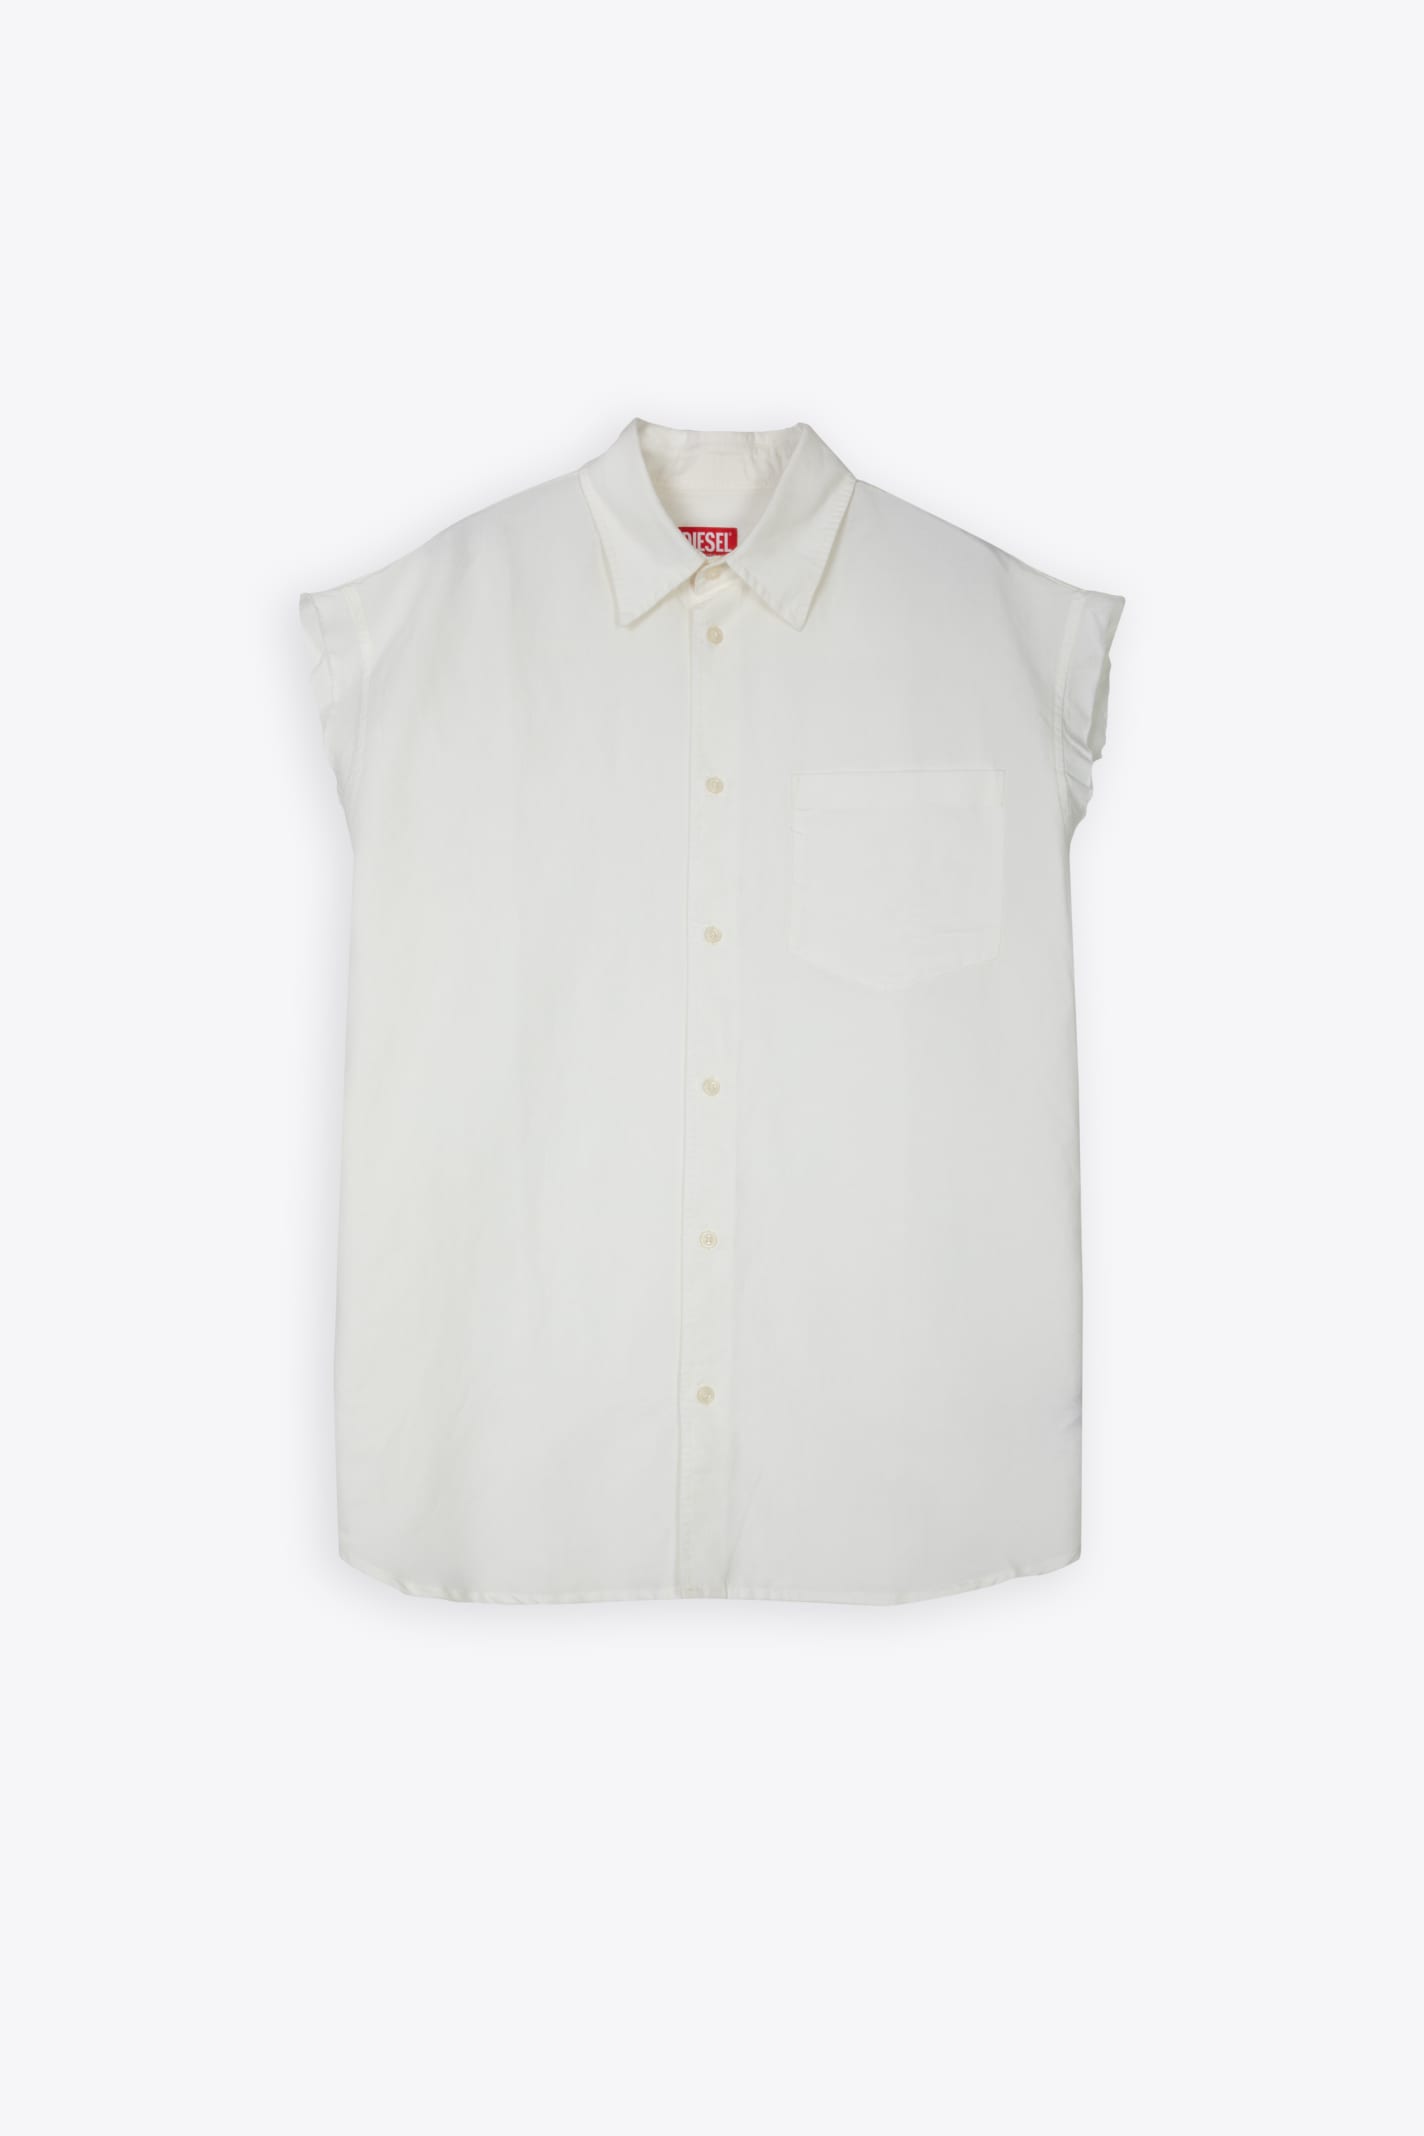 S-simens White linen blend sleeveless shirt - S-Simens